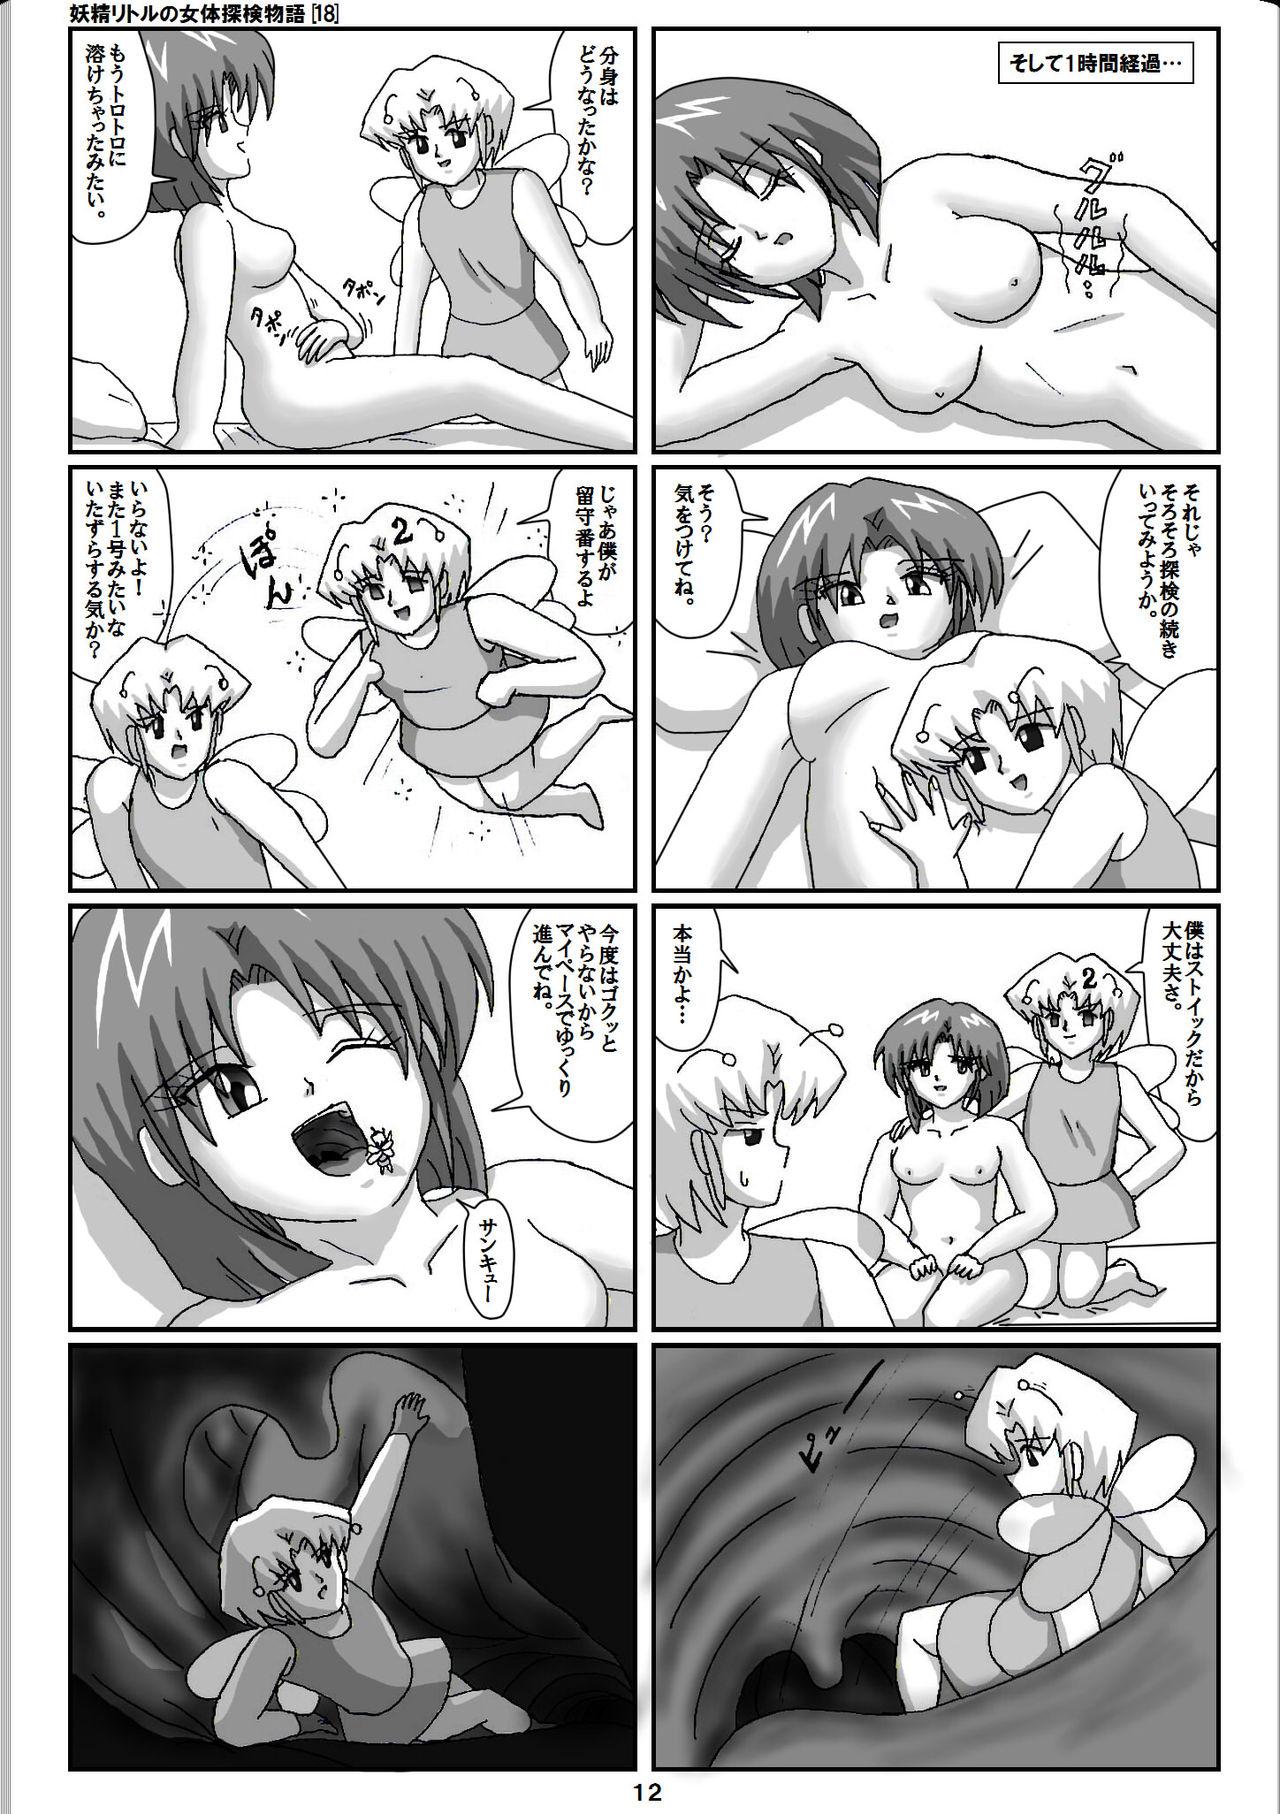 Transex Yousei ritoru no nyoutai tanken monogatari Super - Page 12